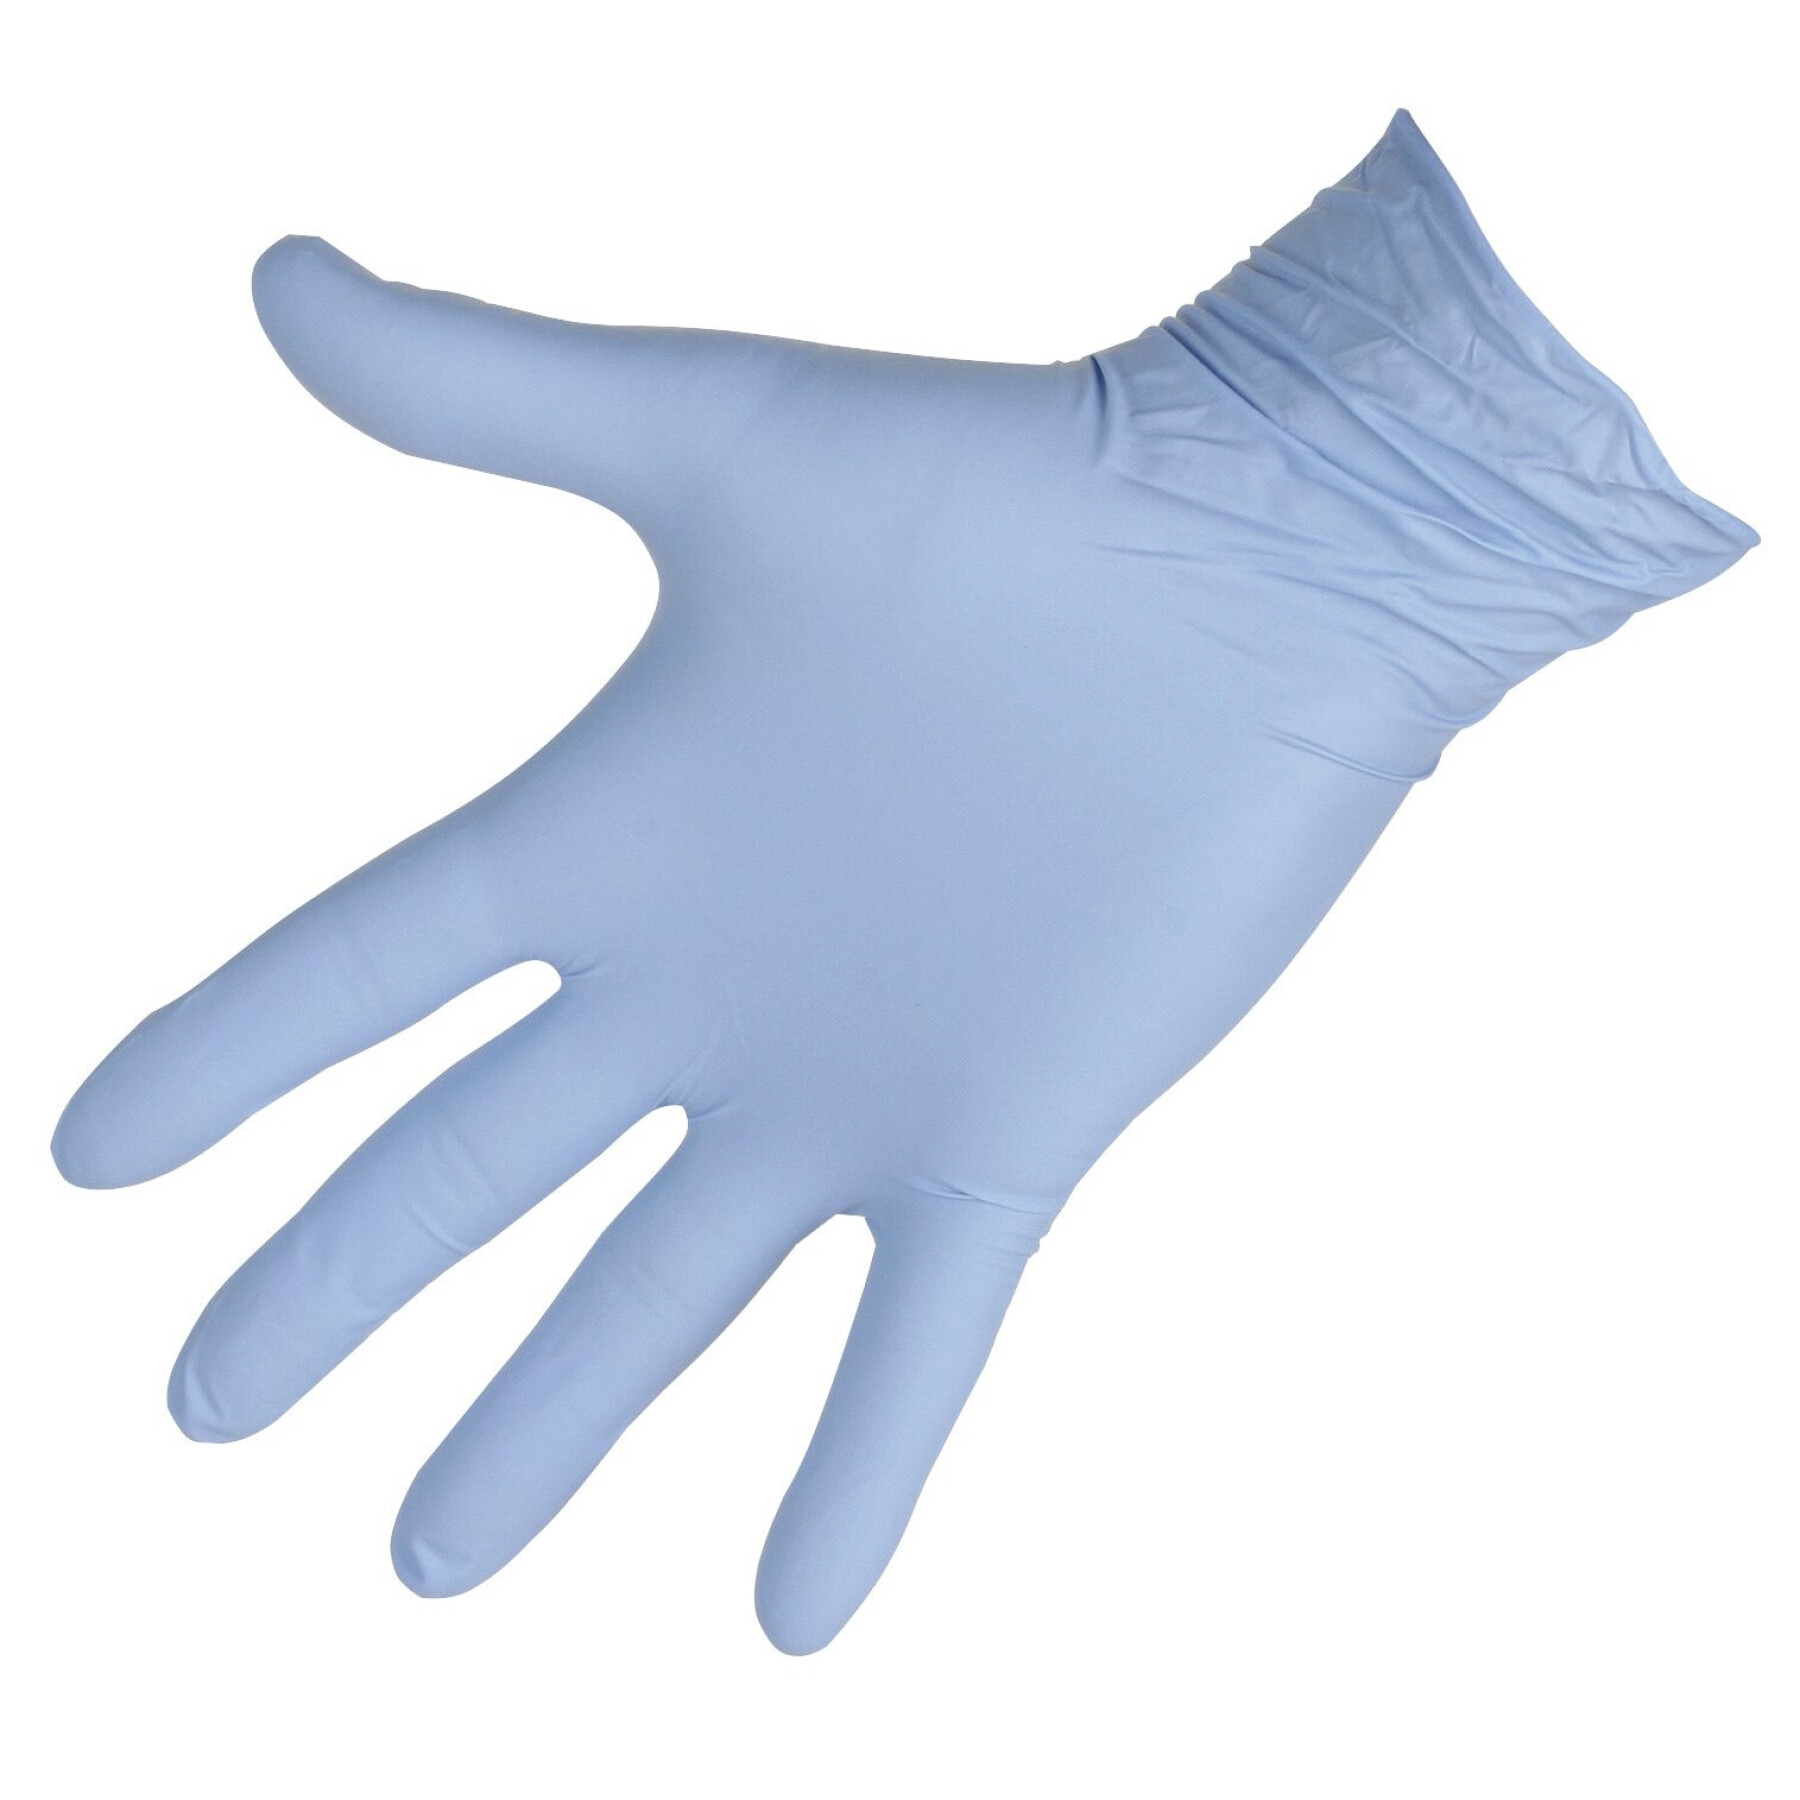 Nitril handschoenen voor eenmalig gebruik Kerbl Top Pro (x90)